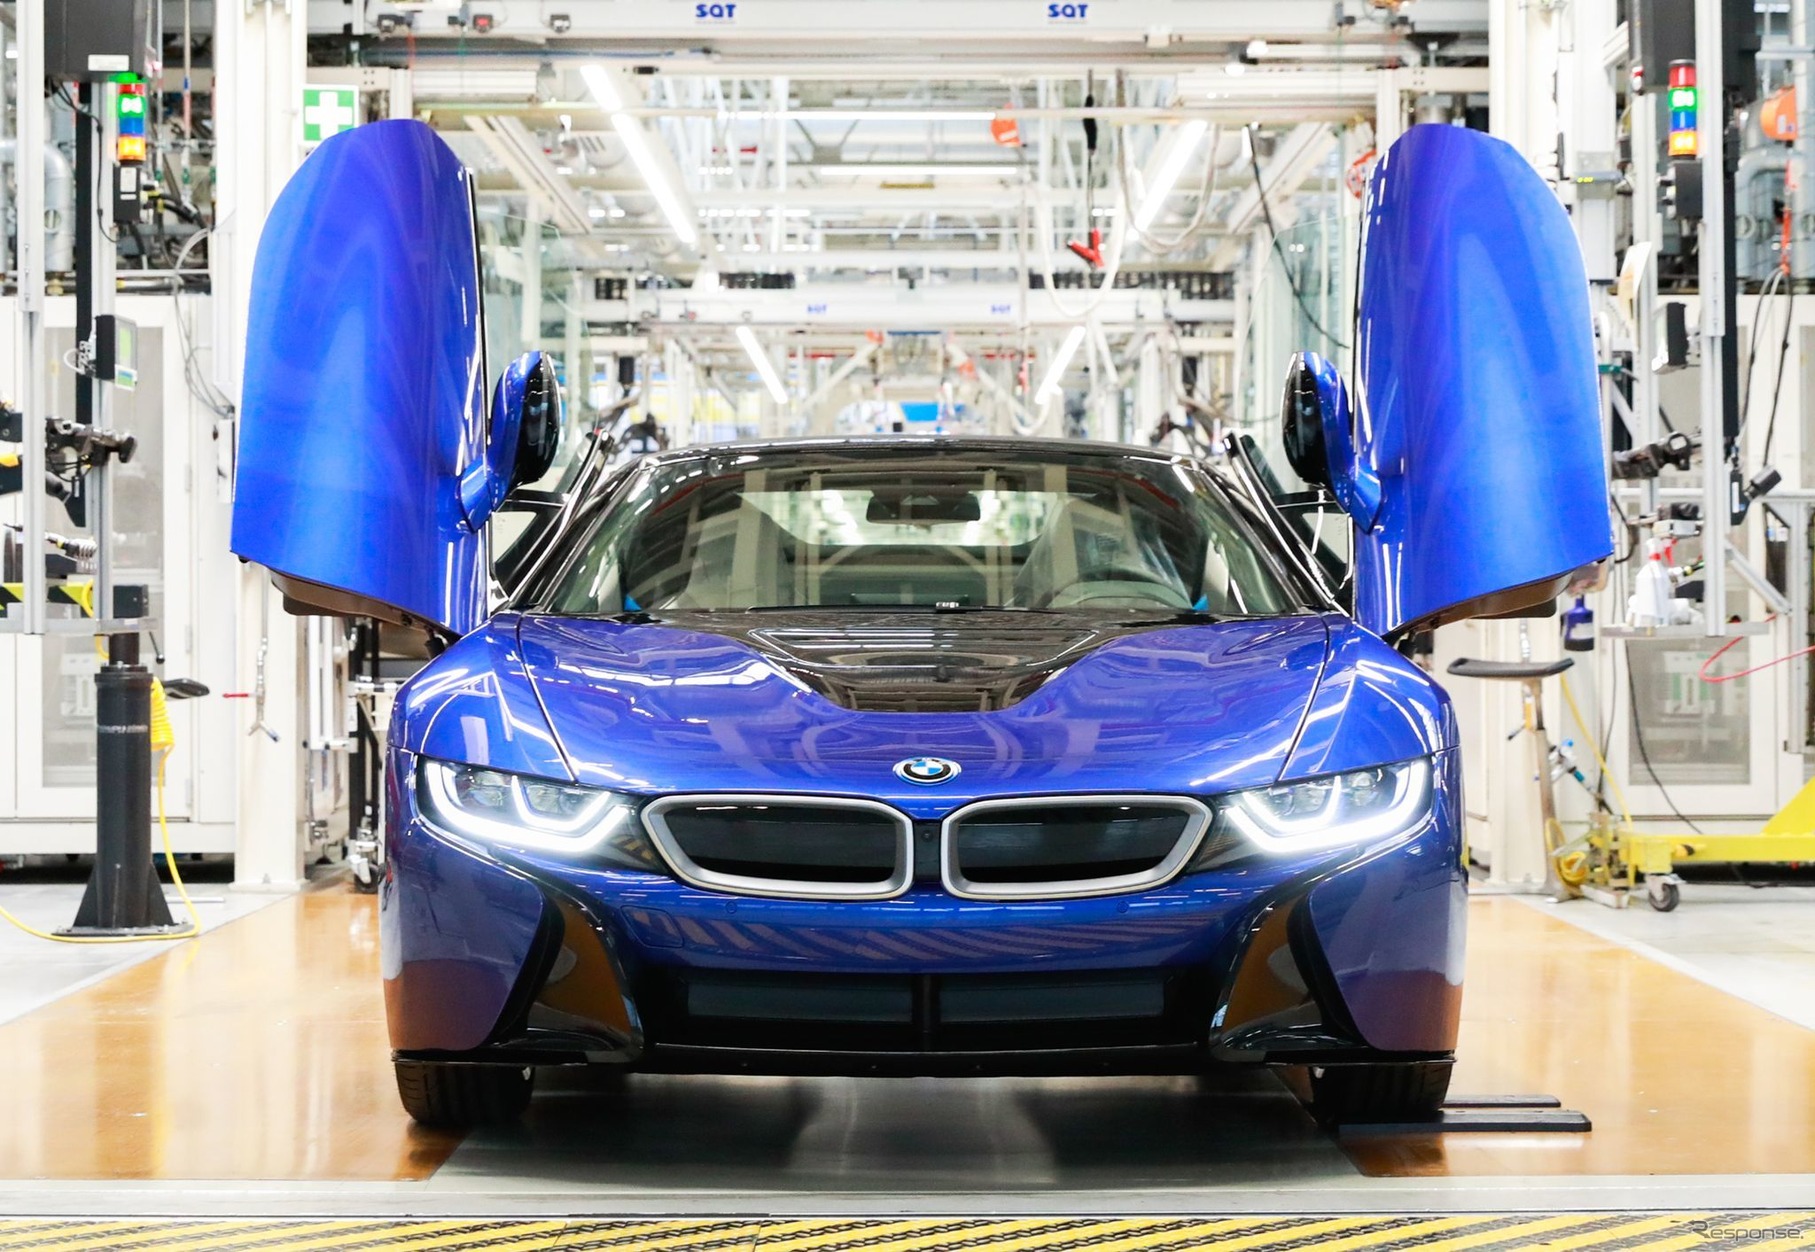 BMWグループのドイツ・ライプツィヒ工場からラインオフしたBMW i8 の最終モデル、i8 ロードスター